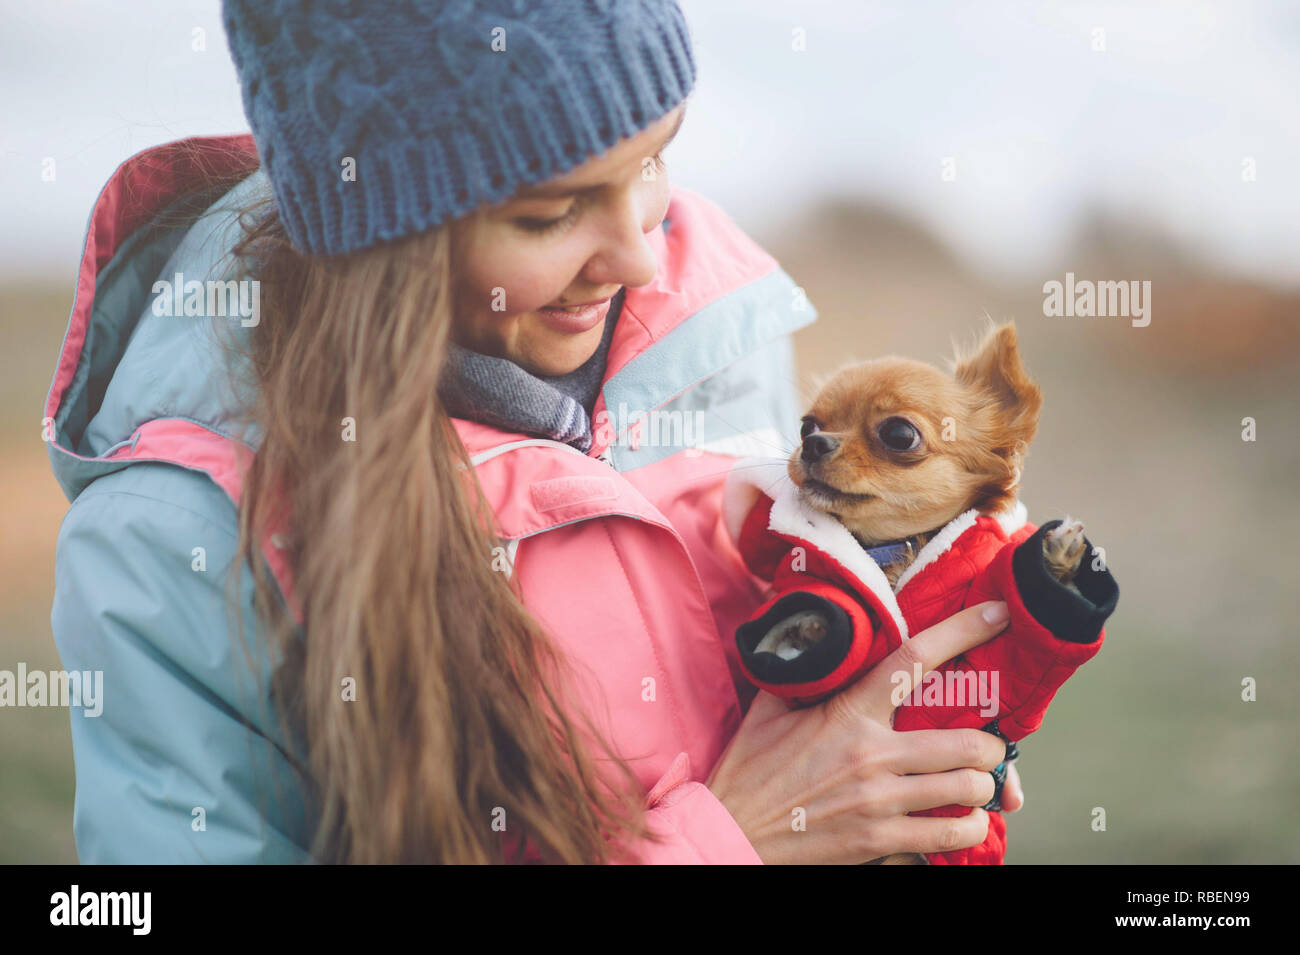 Glückliche gesunde junge Frau mit kleinen Chihuahua Welpe Hund Tragen von Kleidung in den Händen Stockfoto